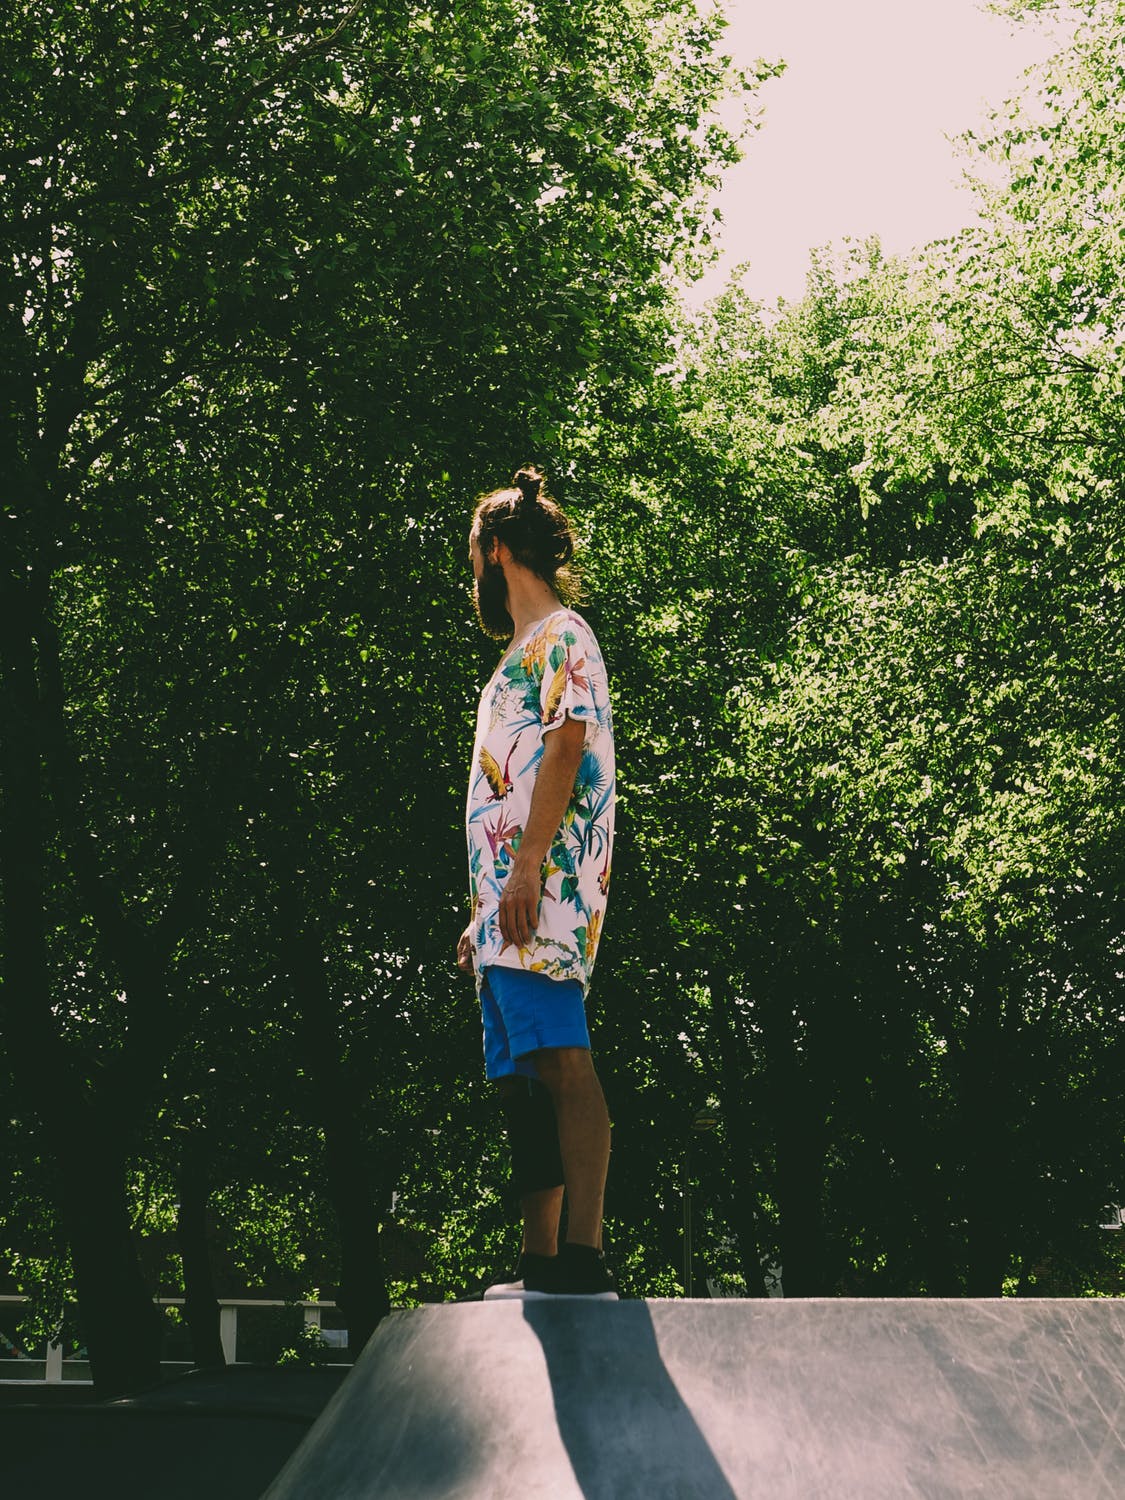 idée de tenue hippie chic homme décontracté avec t shirt oversize à motif tropical et short homme couleur bleue